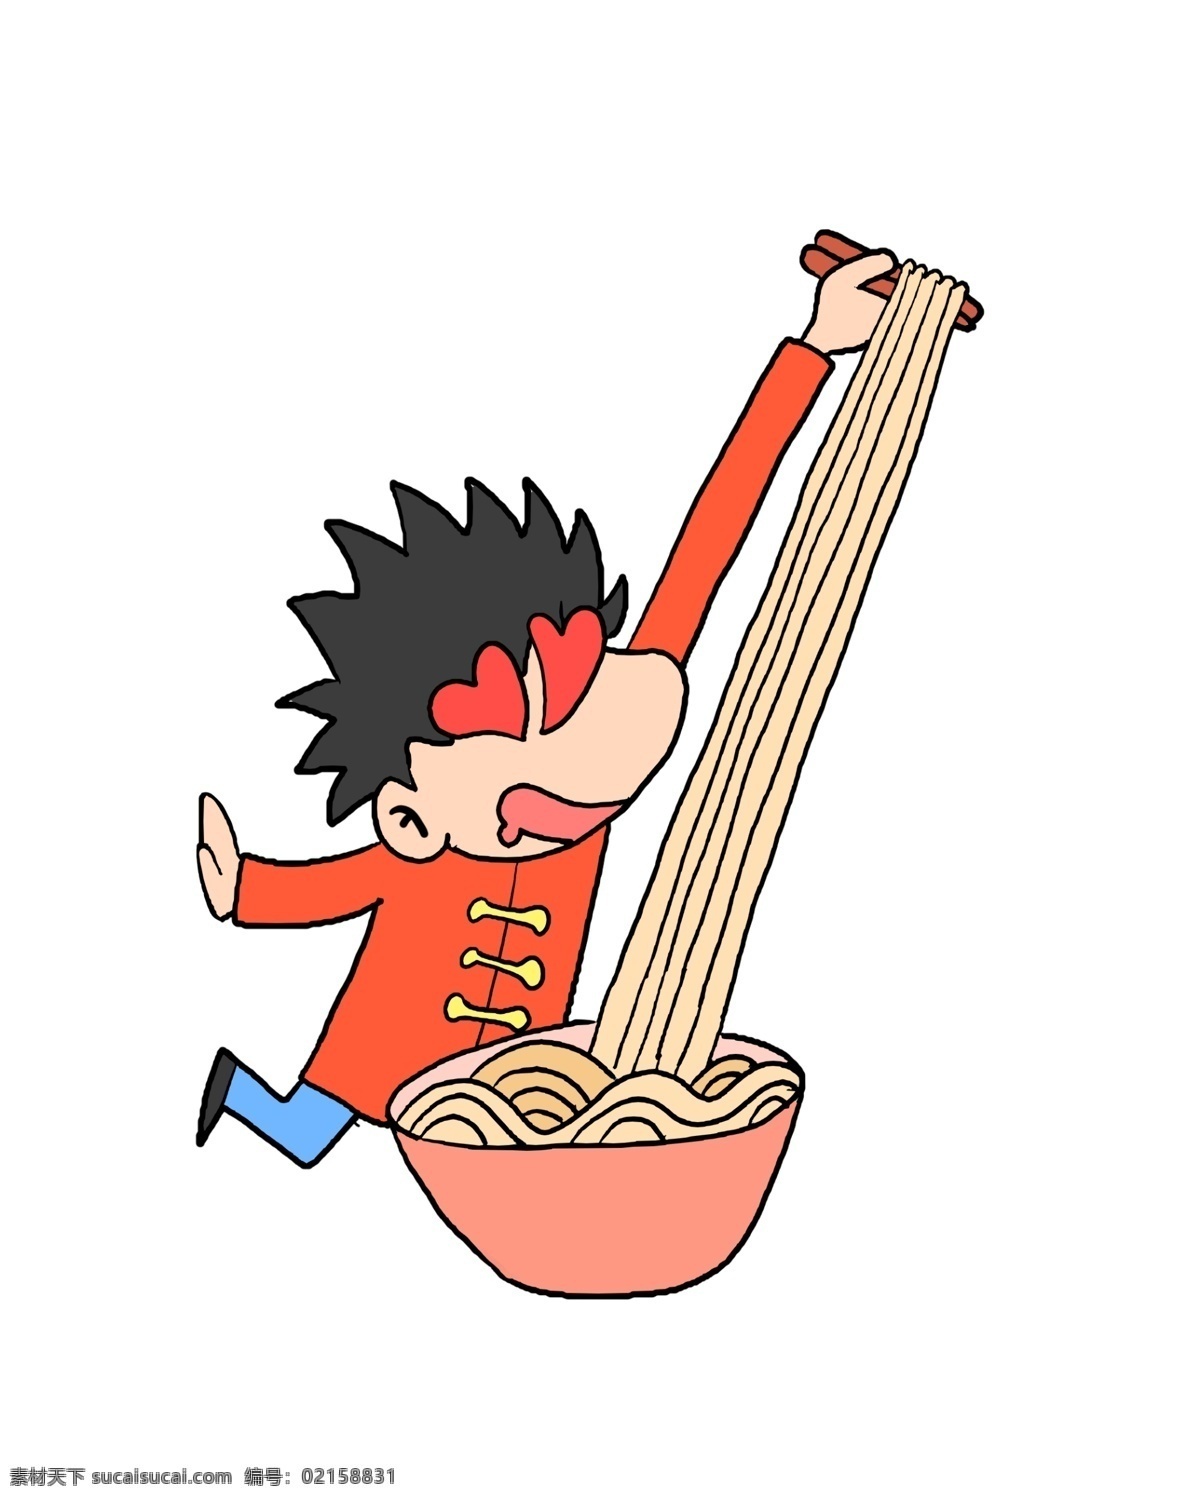 吃 面的 小 男孩 插画 吃面的小男孩 爱心装饰 黄色的面条 红色的瓷碗 红色的筷子 卡通人物 营养面条